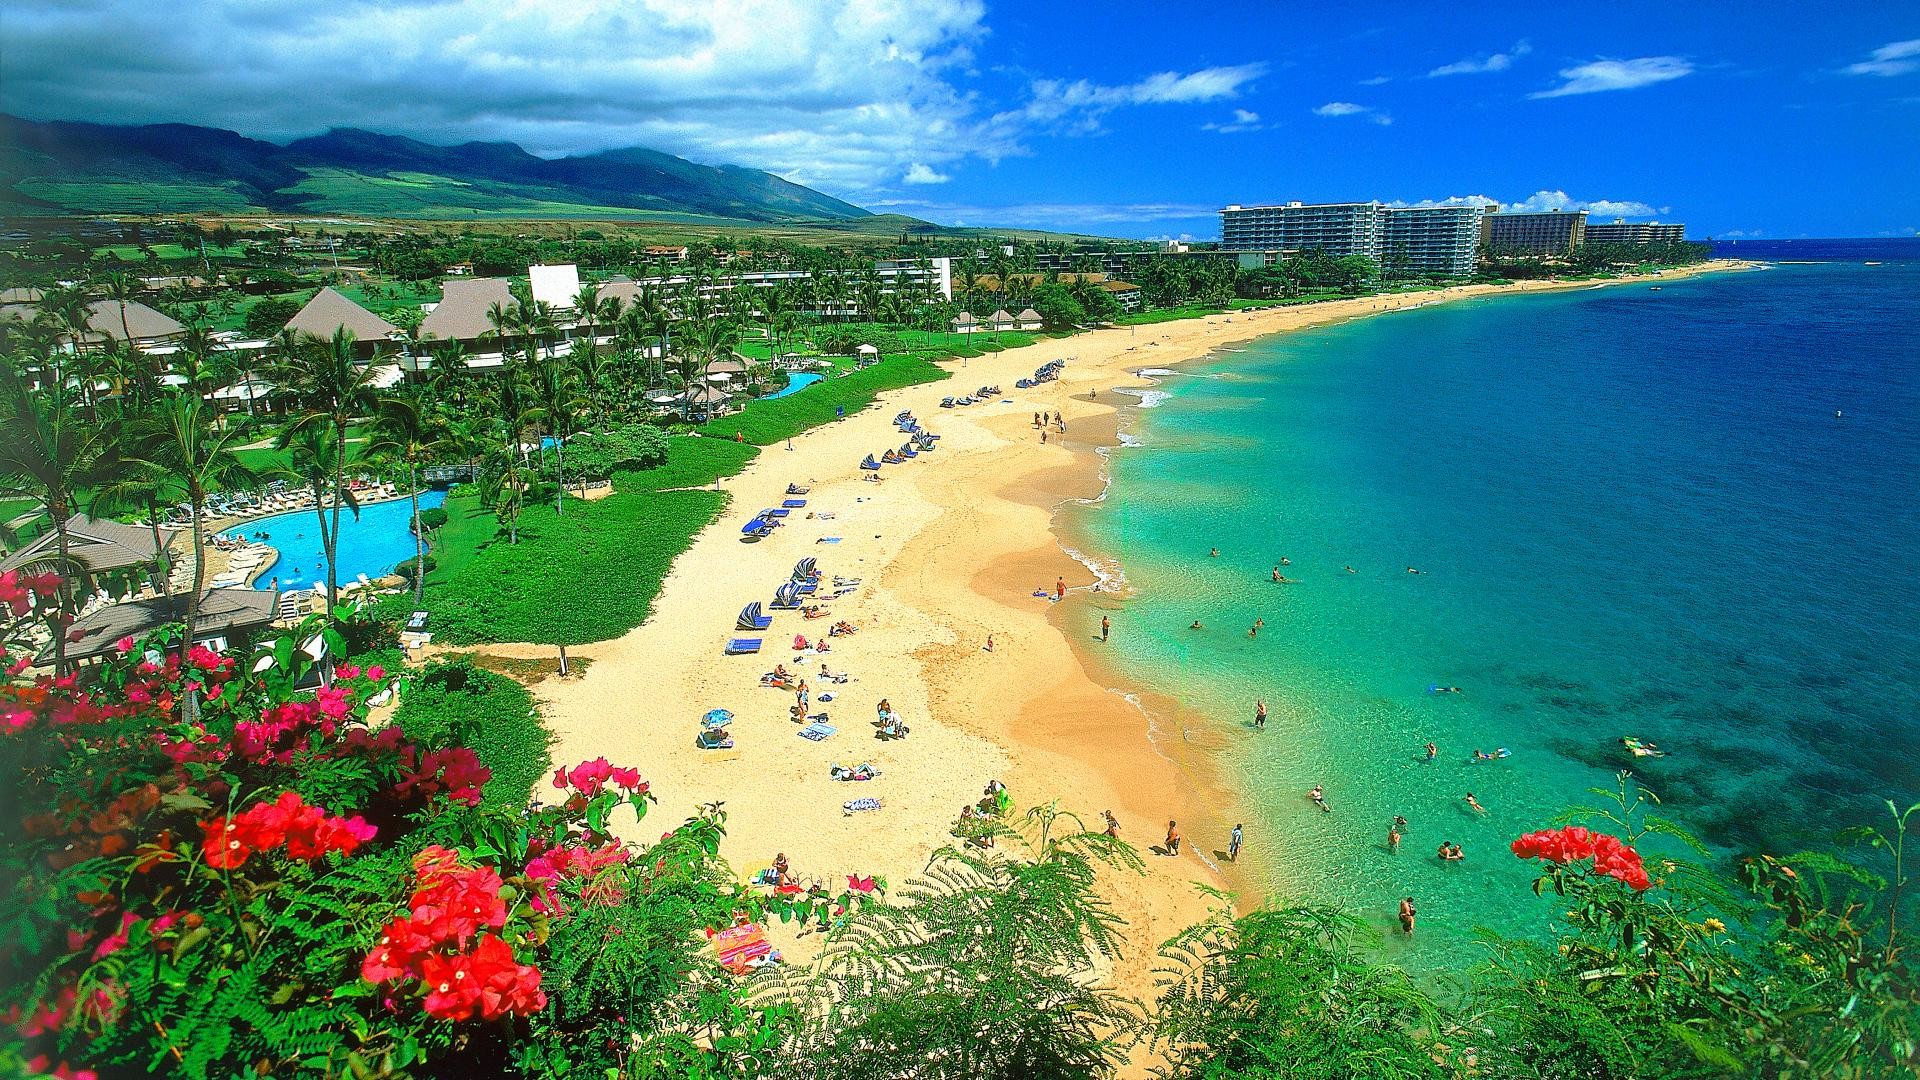 Hawaii Wallpapers là tác phẩm nghệ thuật kỳ diệu, tận hưởng chỉnh sửa và cập nhật màn hình của bạn với bộ sưu tập này. Đắm mình trong vẻ đẹp tự nhiên của Hawaii, nơi có những bãi biển đẹp nhất trên thế giới. Xem ngay những hình nền độc đáo này để trải nghiệm hành trình trí tưởng tượng của bạn.